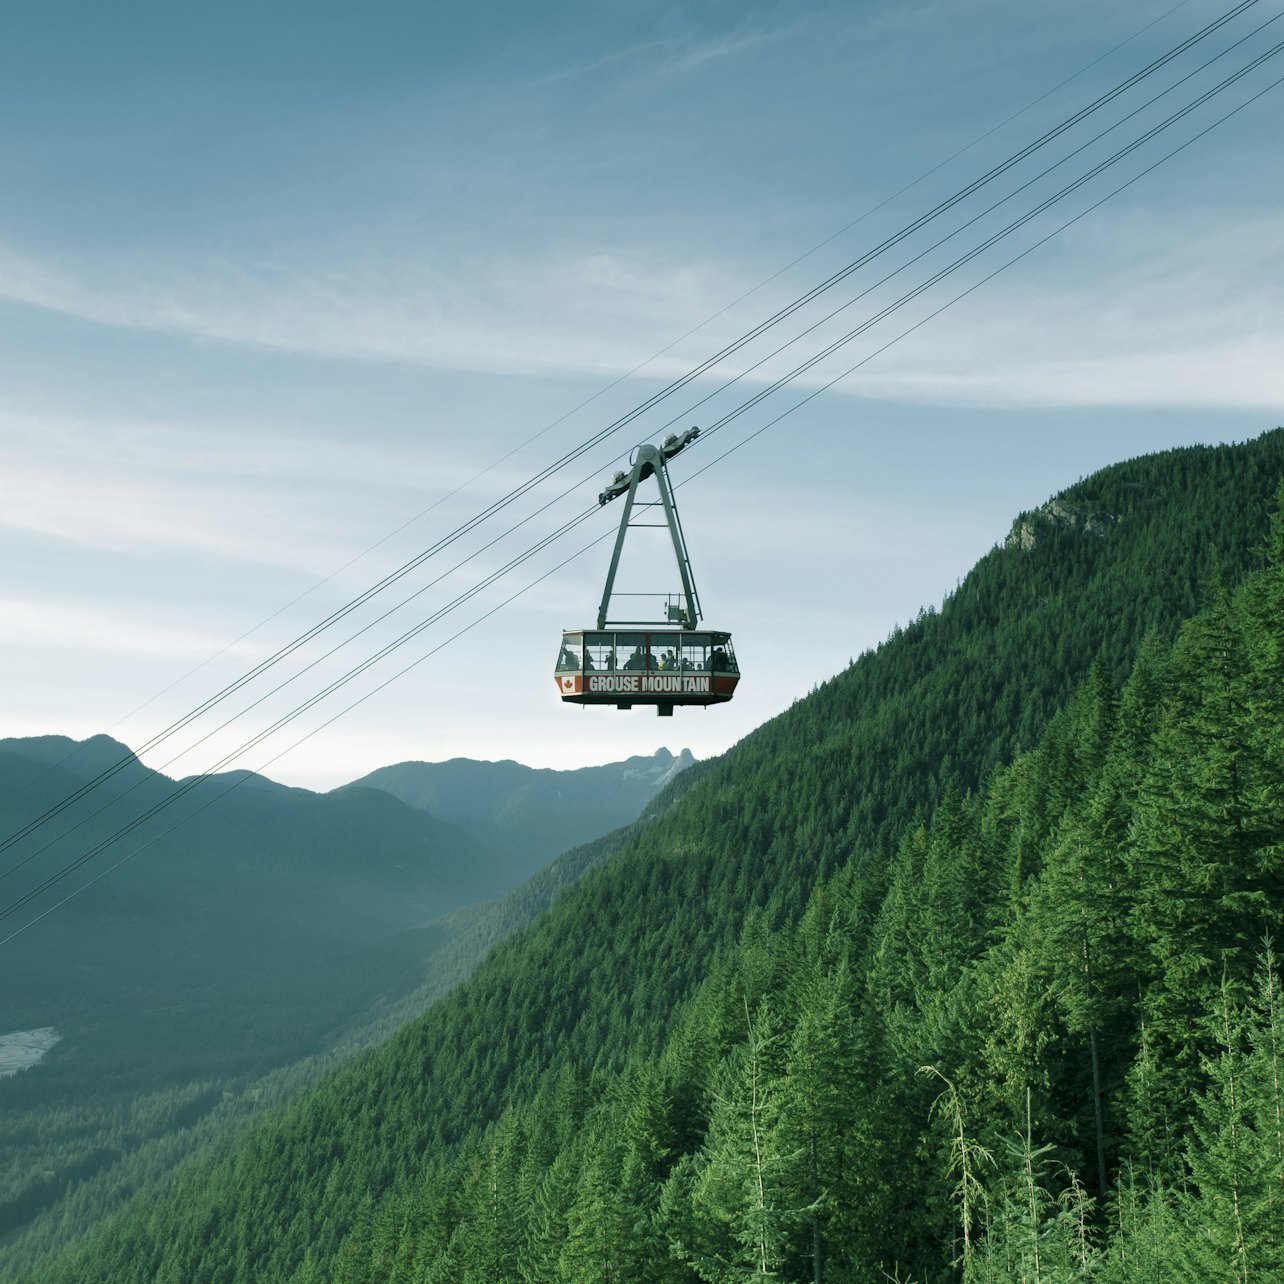 Grouse Mountain:Biglietto d'Ingresso - Alloggi in Vancouver